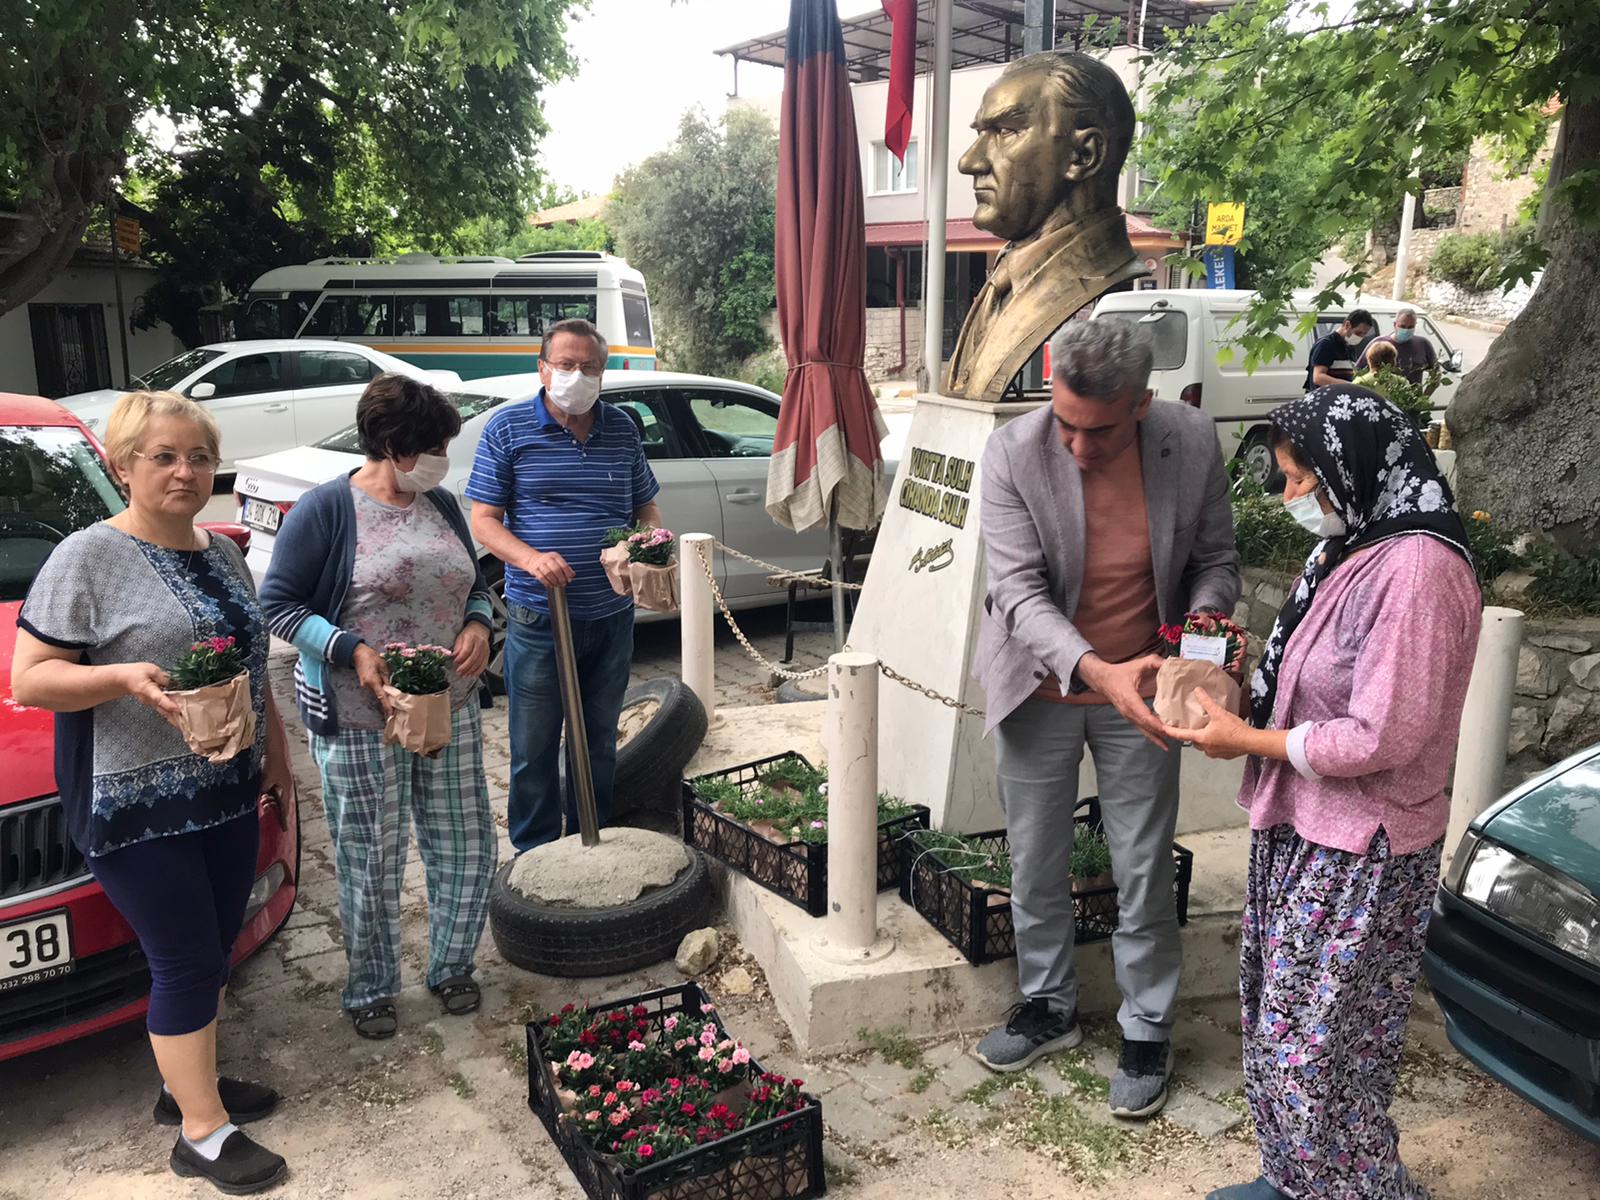 İzmir Büyükşehir, destek olmak için kooperatiflerden alınan 15 bin saksı karanfil ve dalya çiçeğini anneler ile kadın muhtarlara dağıtıyor.